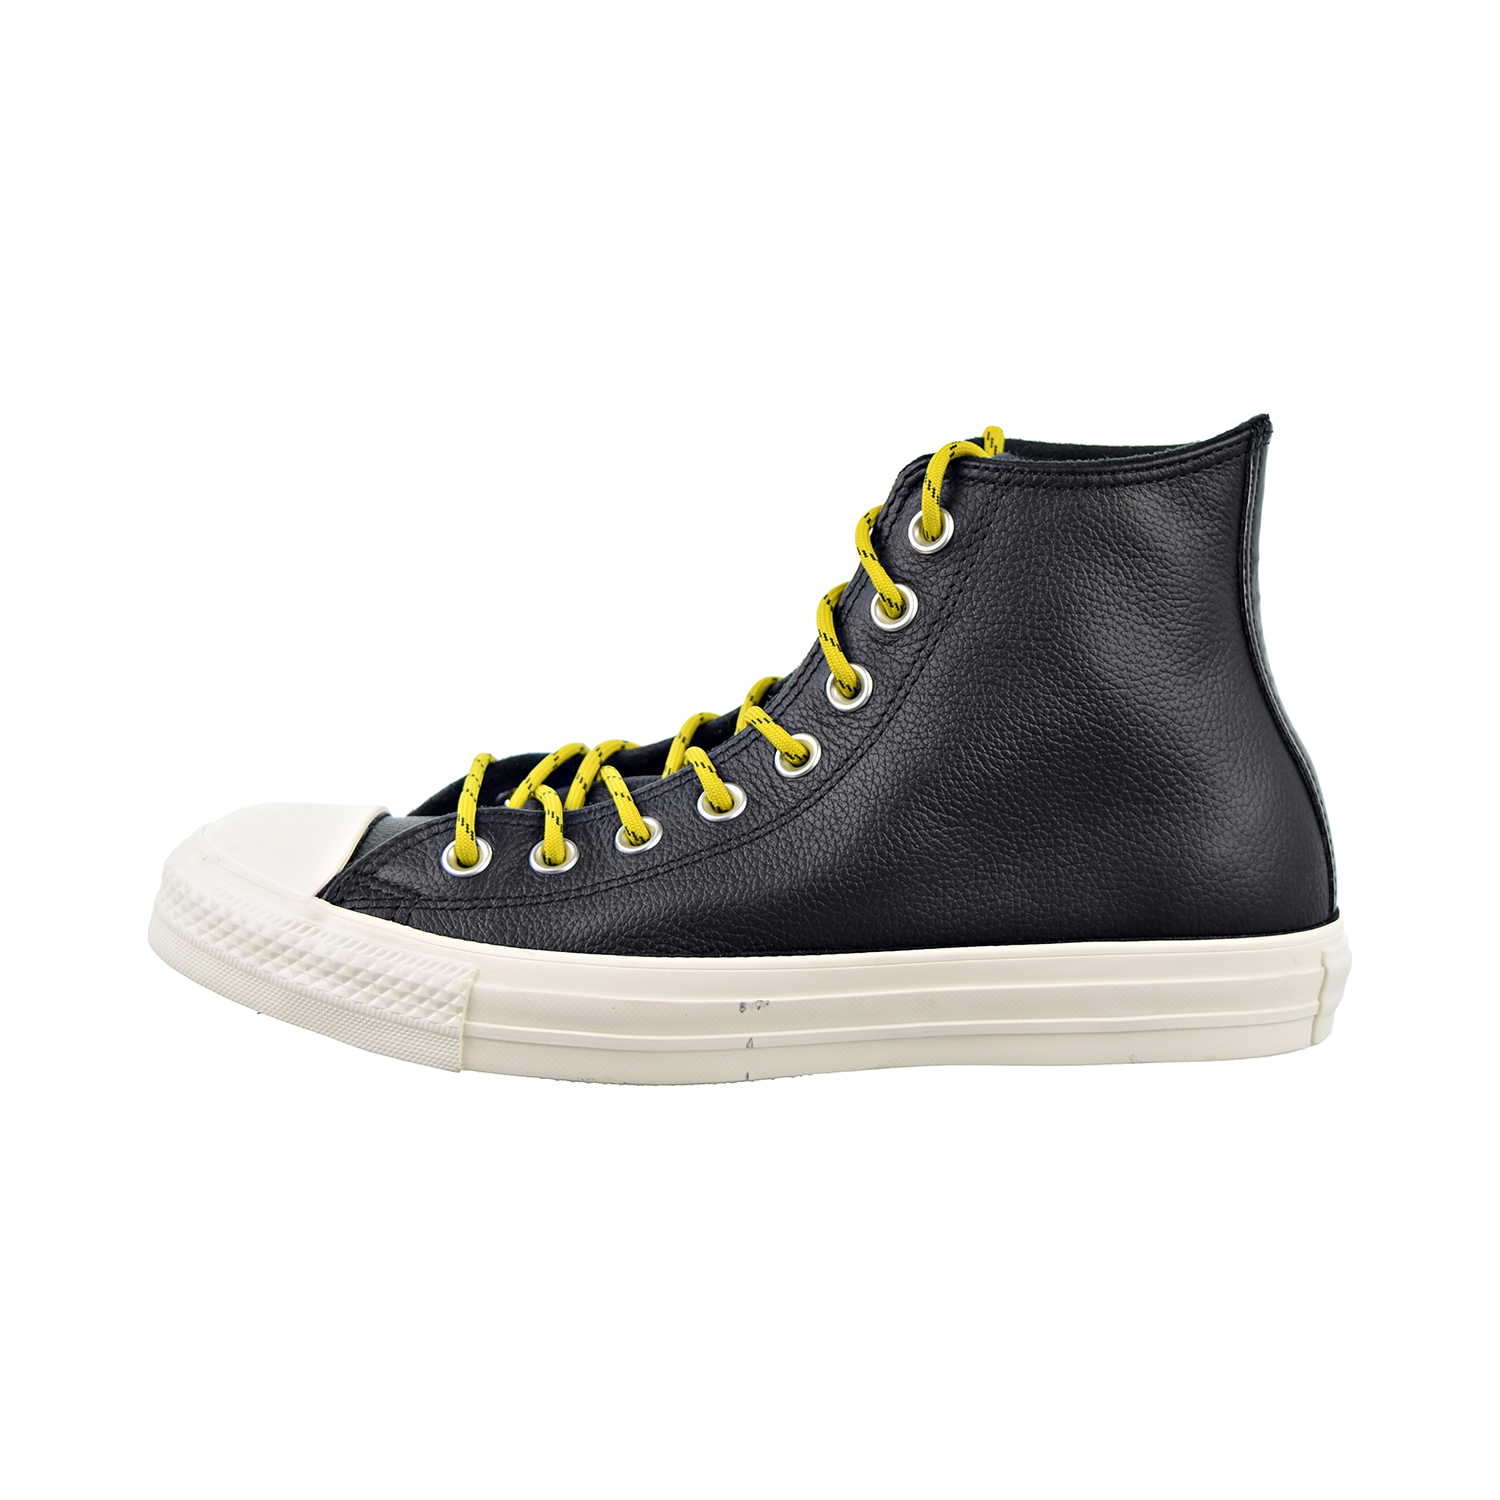 Converse Chuck Taylor All Star HI Mens Shoes Black-Bold Citron-Egret 163339c - image 4 of 6